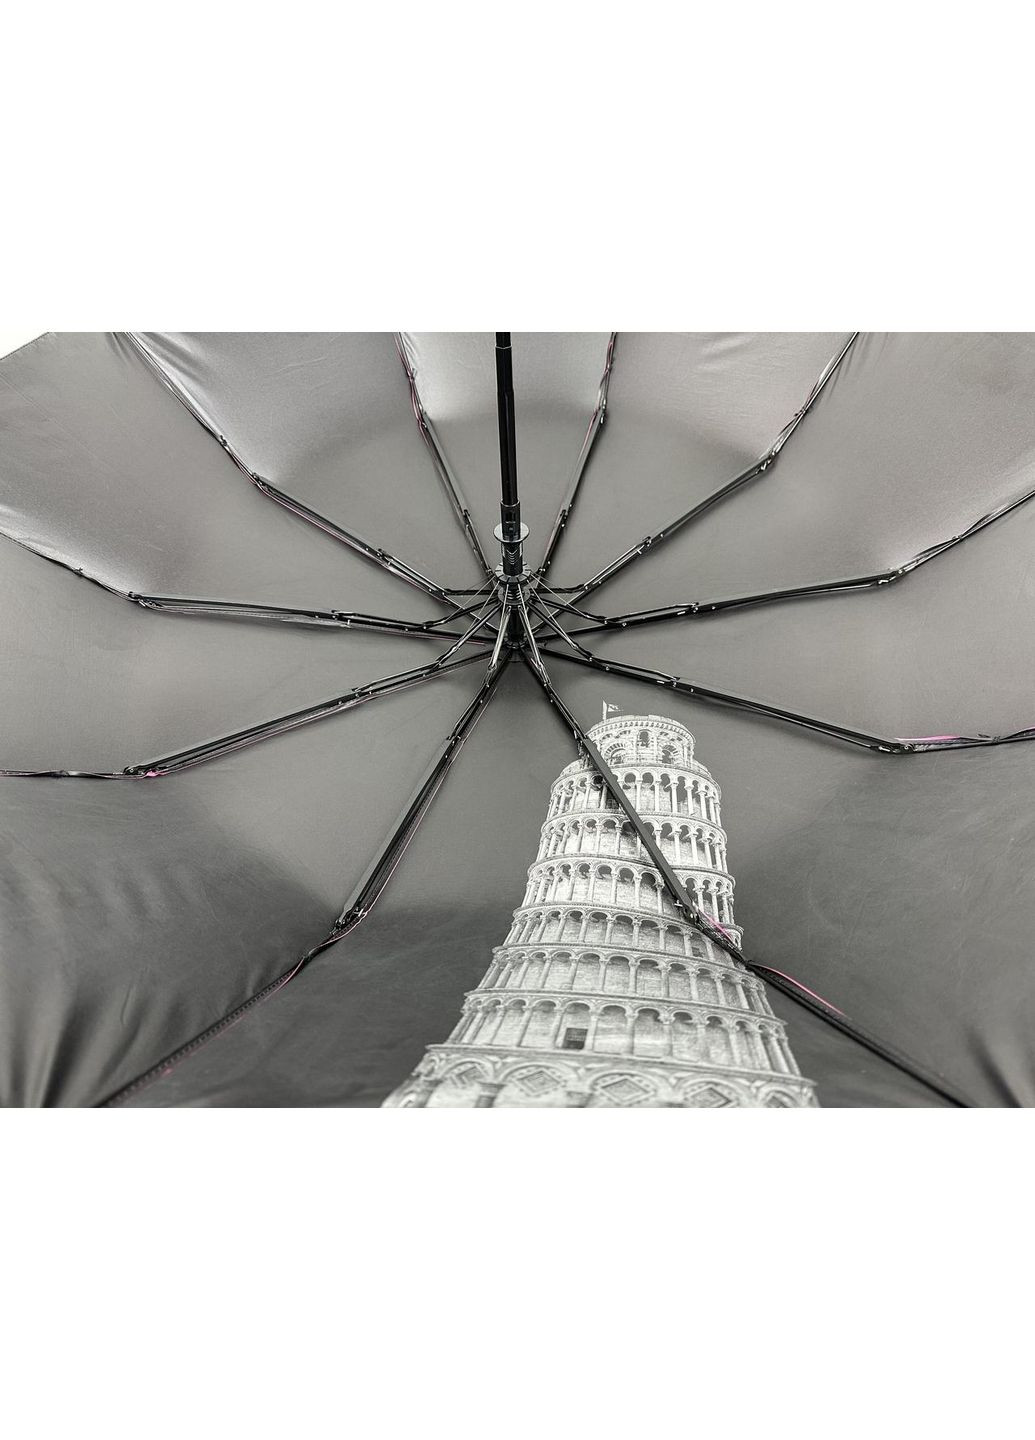 Женский зонт полуавтоматический d=102 см Bellissima (288048140)